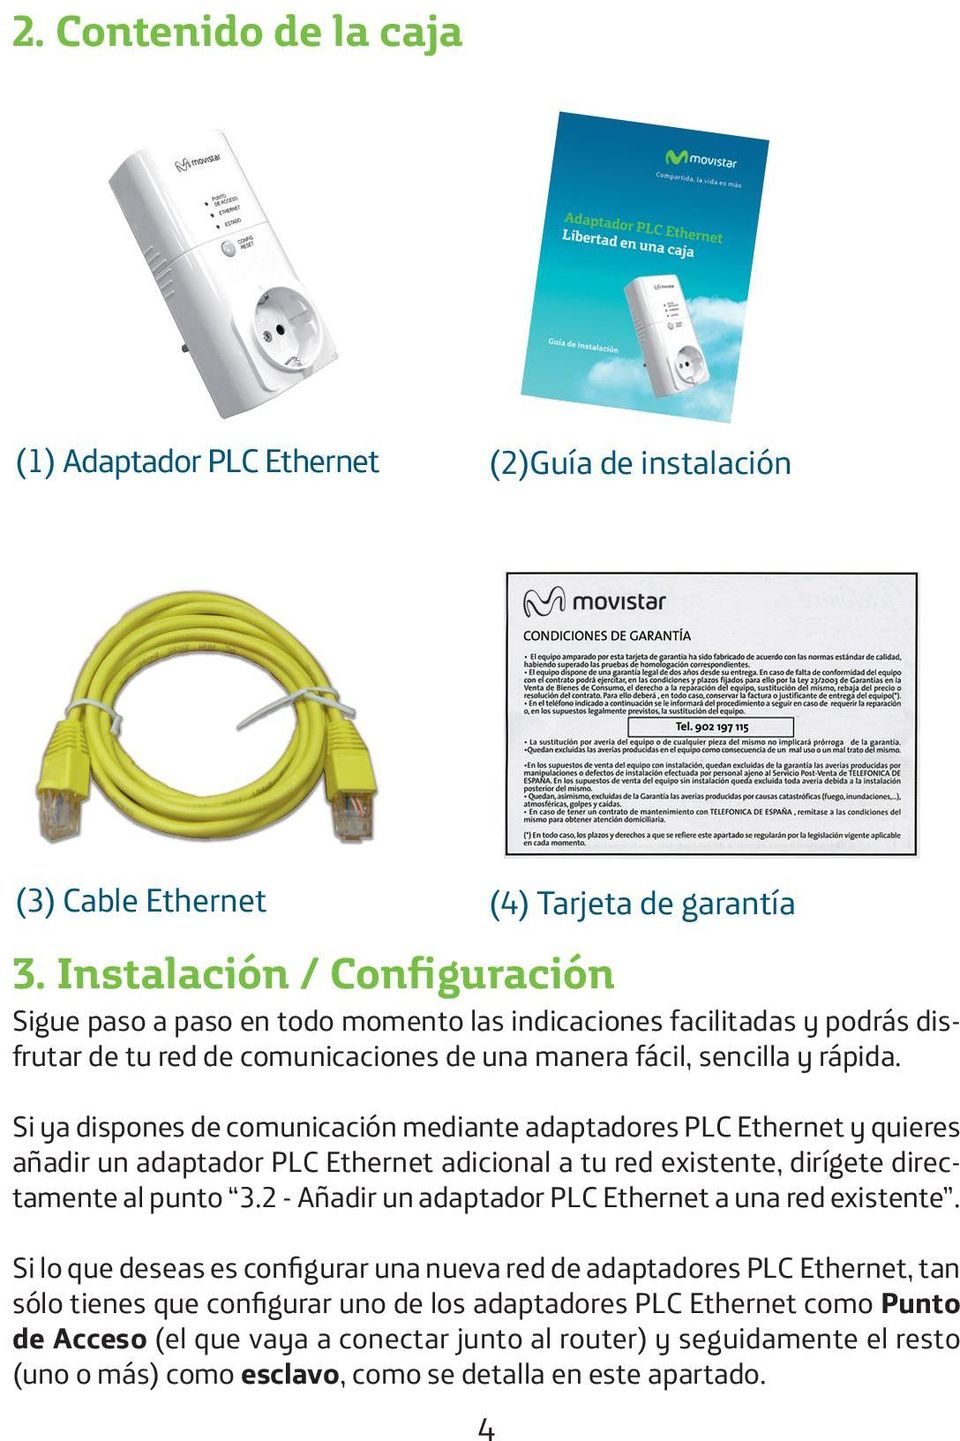 Si ya dispones de comunicación mediante adaptadores PLC Ethernet y quieres añadir un adaptador PLC Ethernet adicional a tu red existente, dirígete directamente al punto 3.